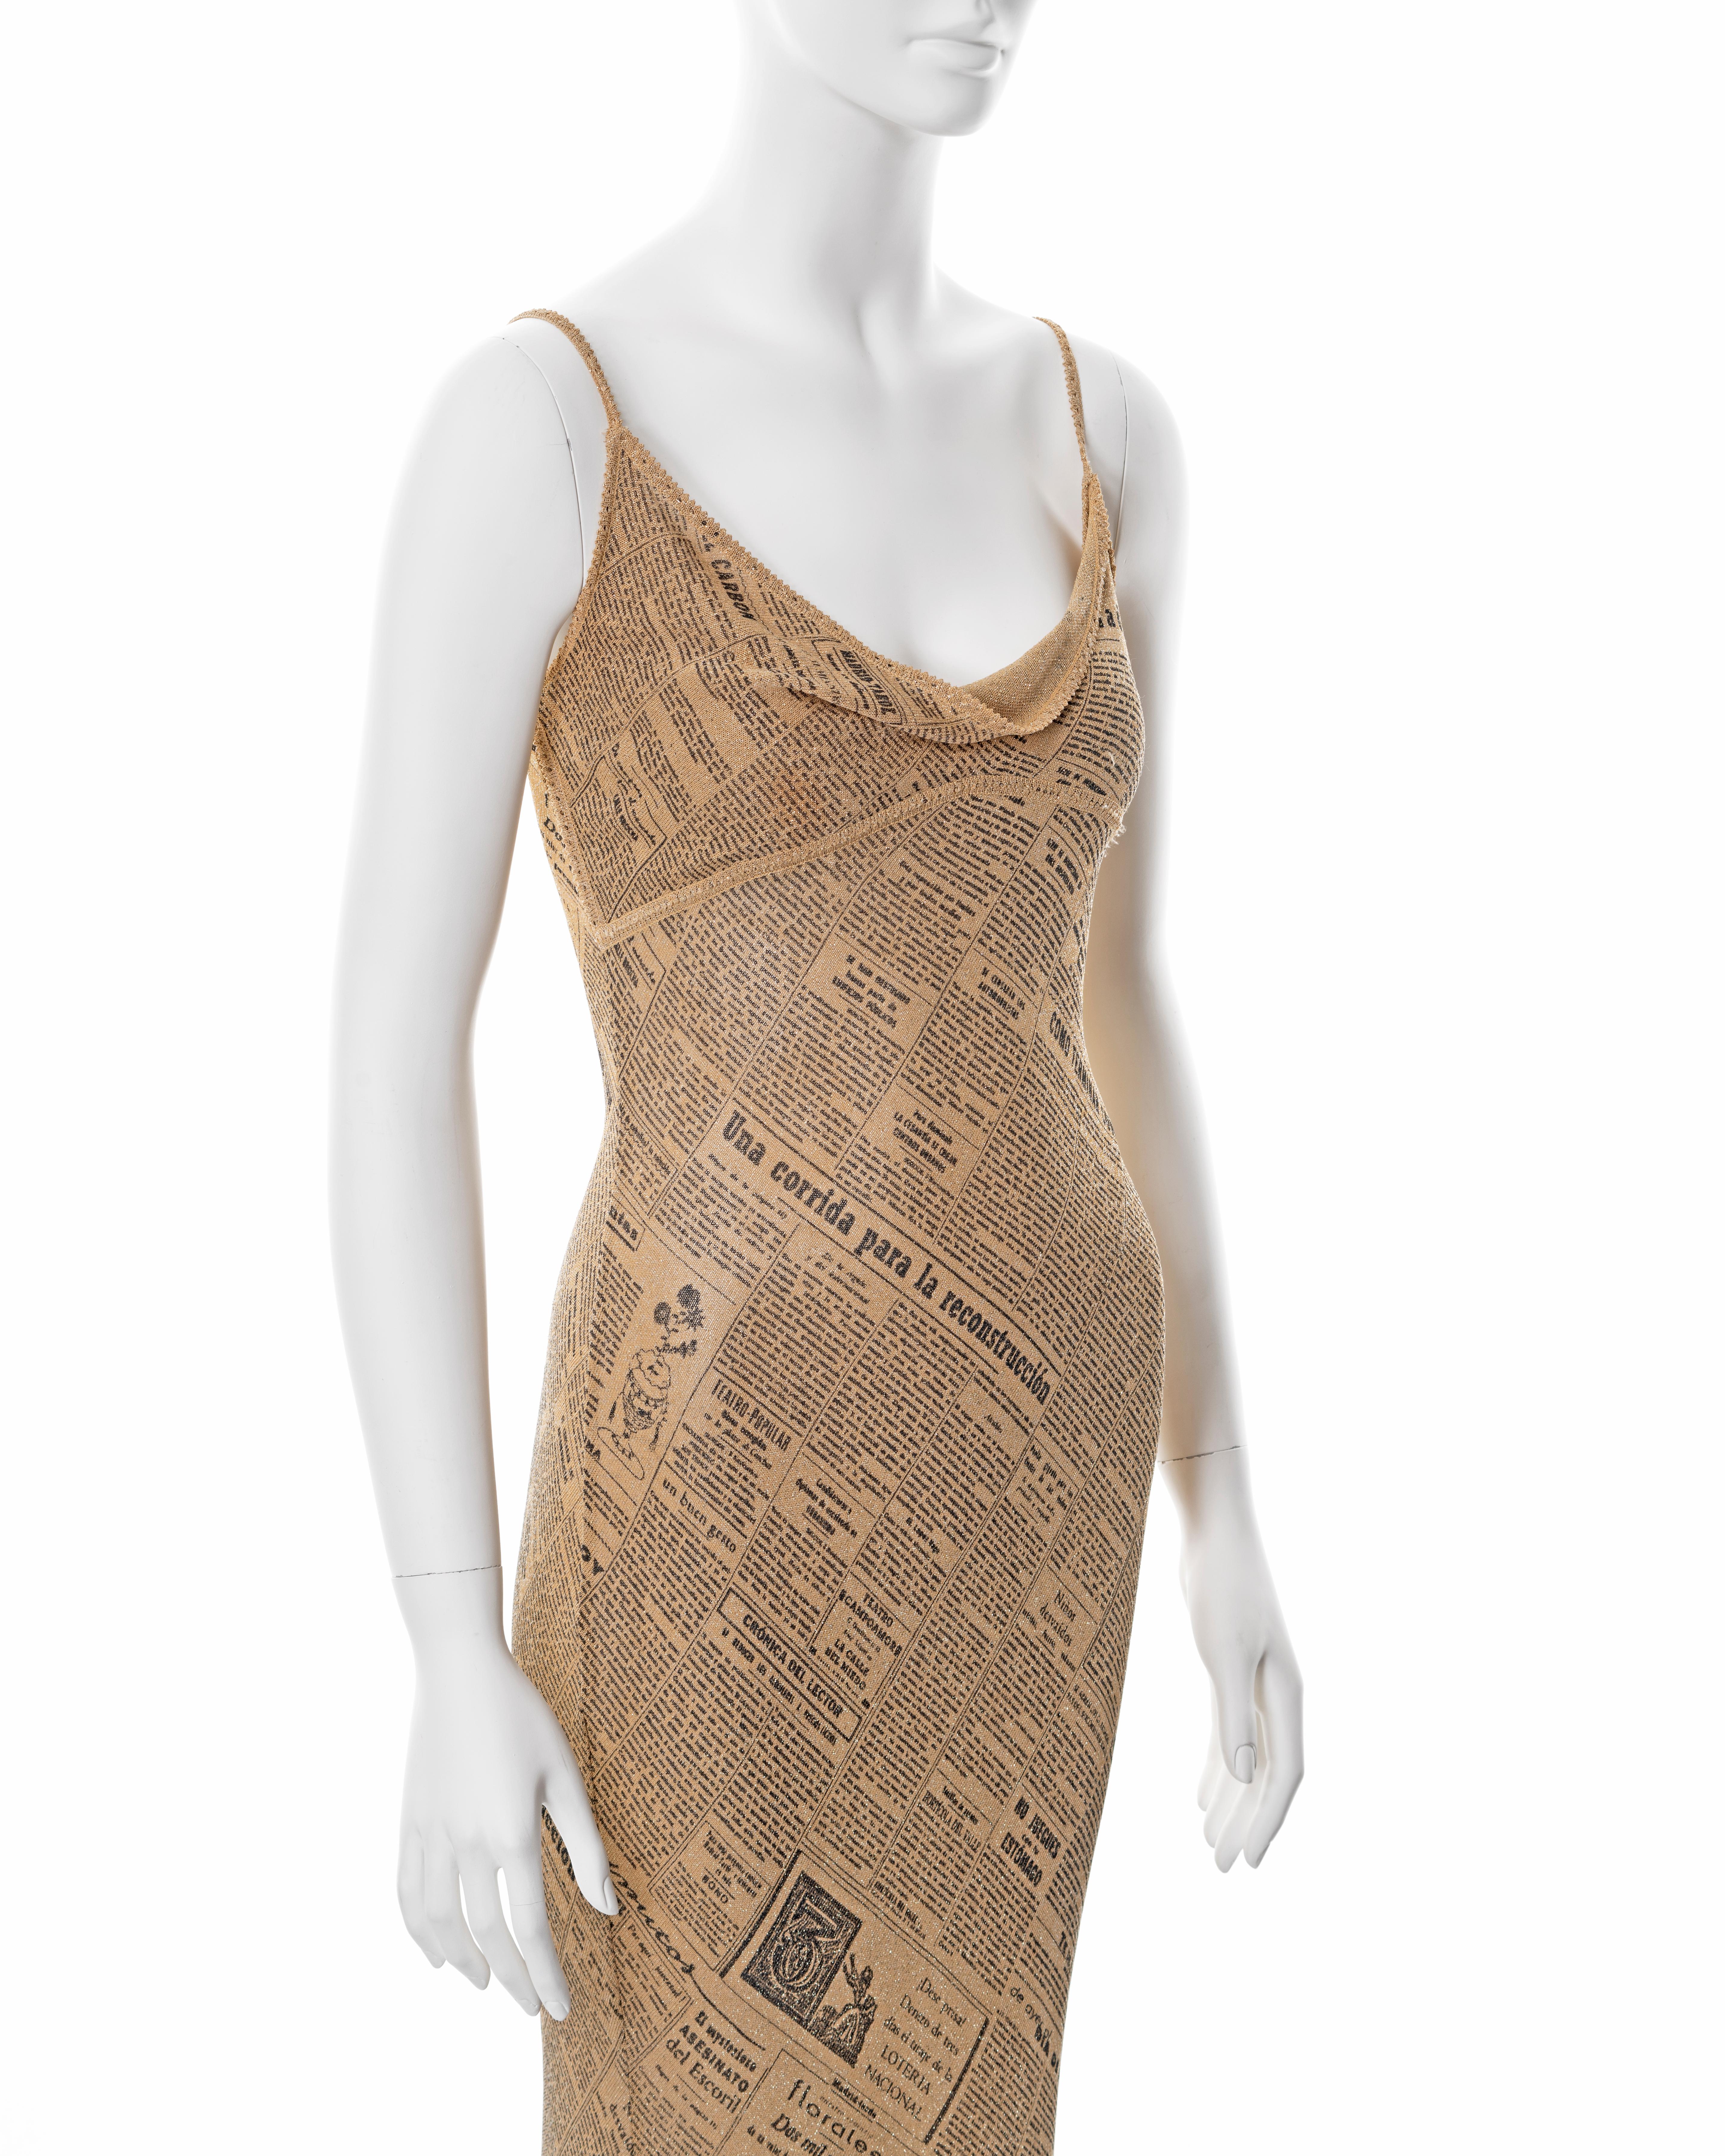 Women's John Galliano gold lurex bias cut evening dress with newsprint motif, ss 2001